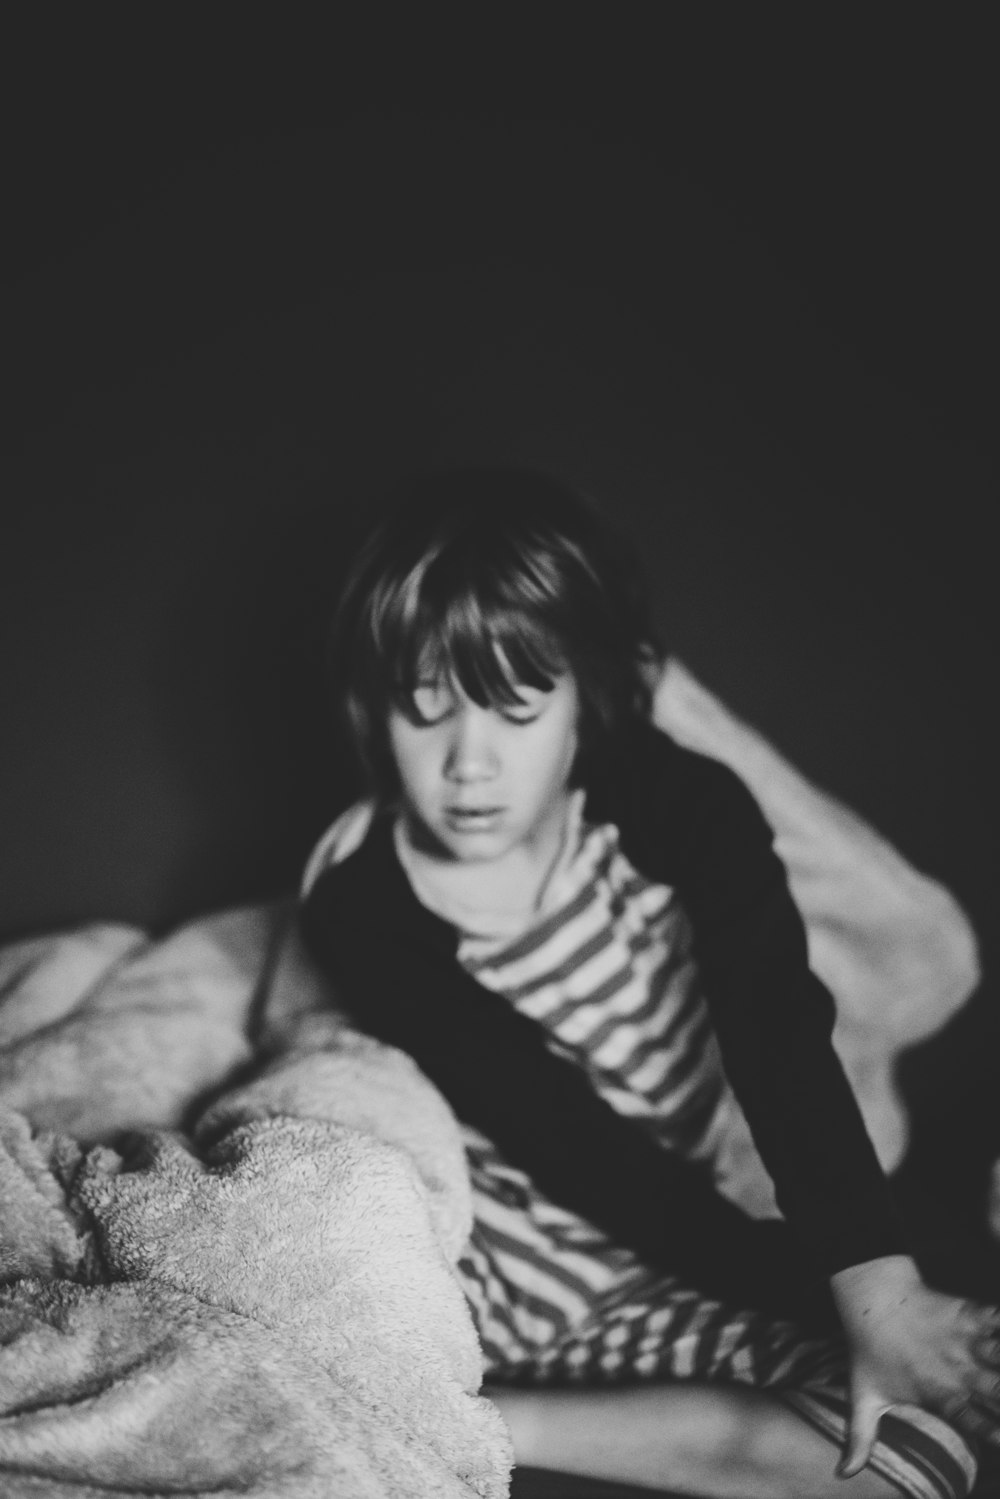 enfant assis à côté d’une couverture en niveaux de gris photo